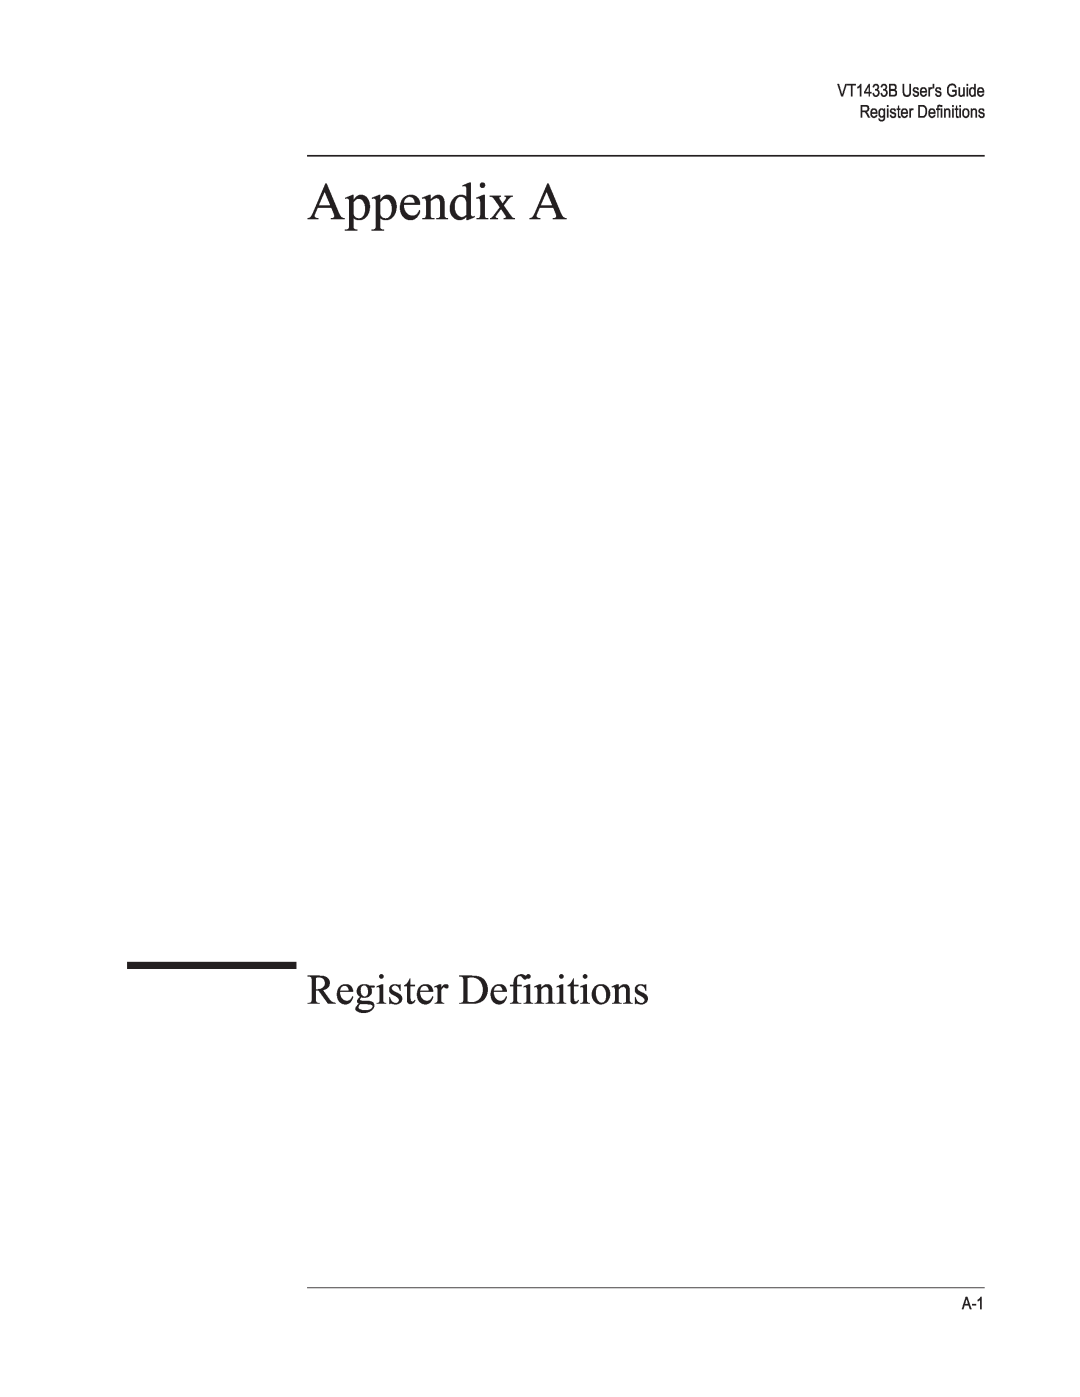 VXI VT1433B manual Appendix A, Register Definitions 